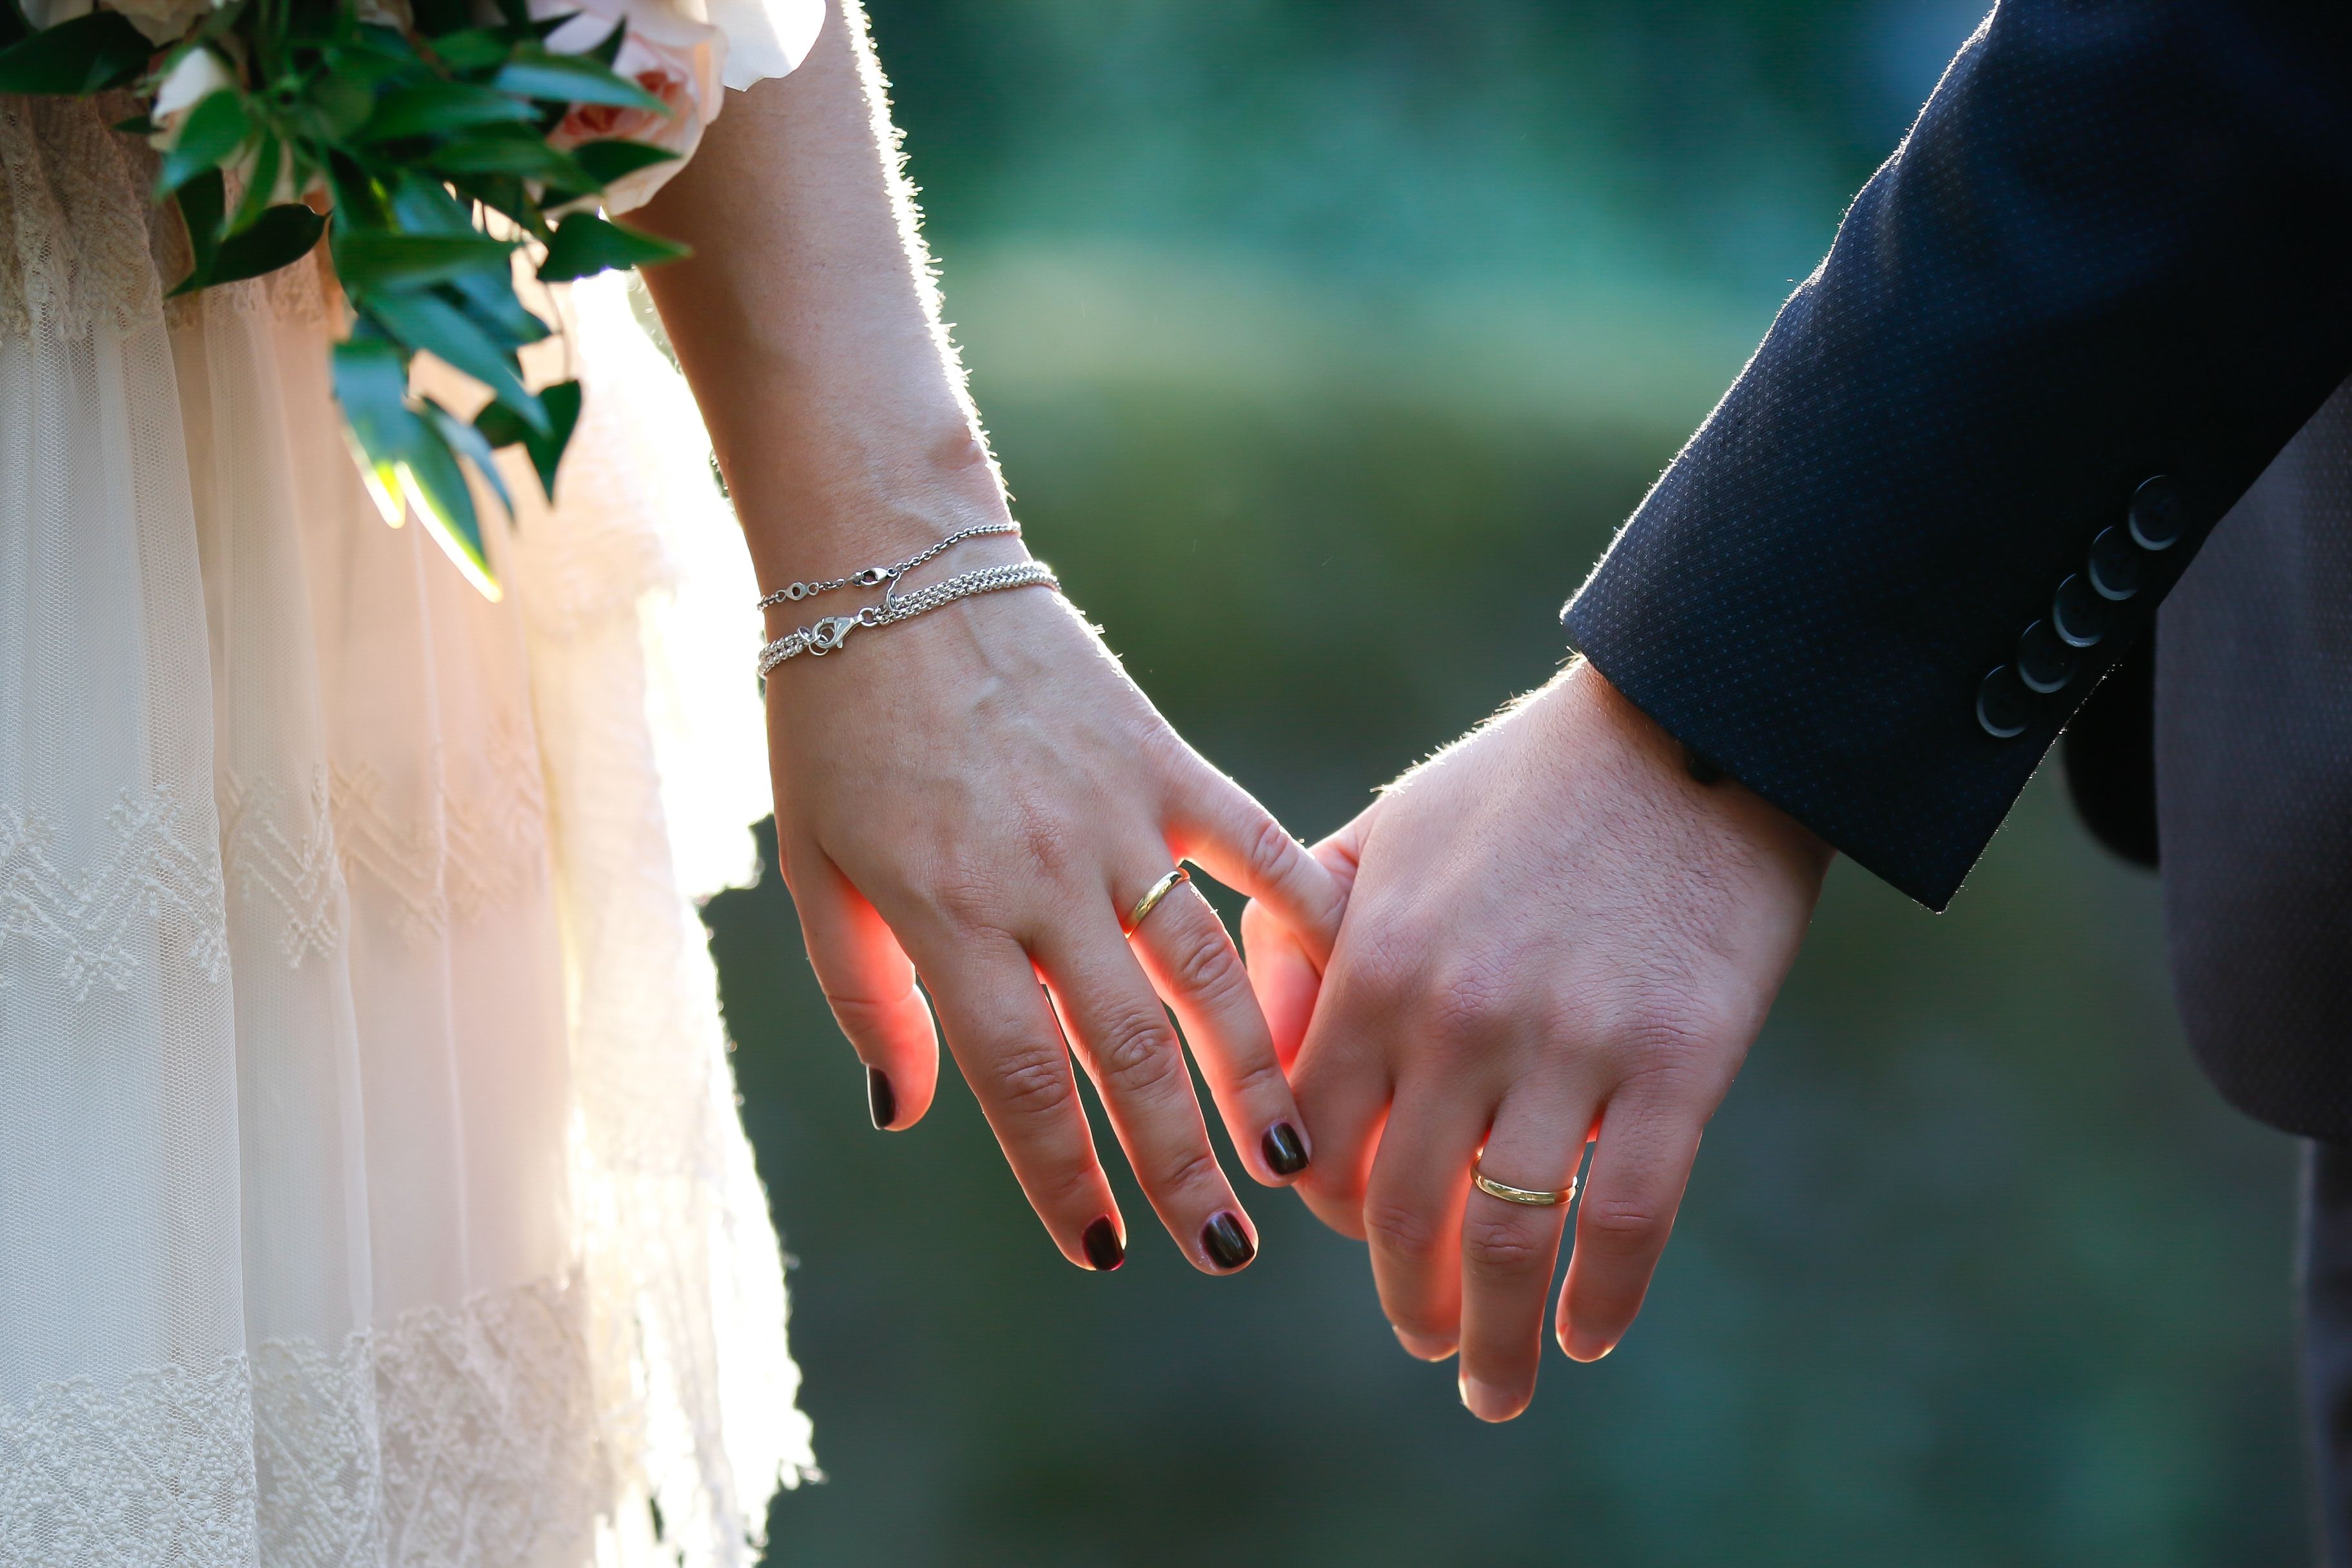 Što se morate zapitati prije ulaska u brak?